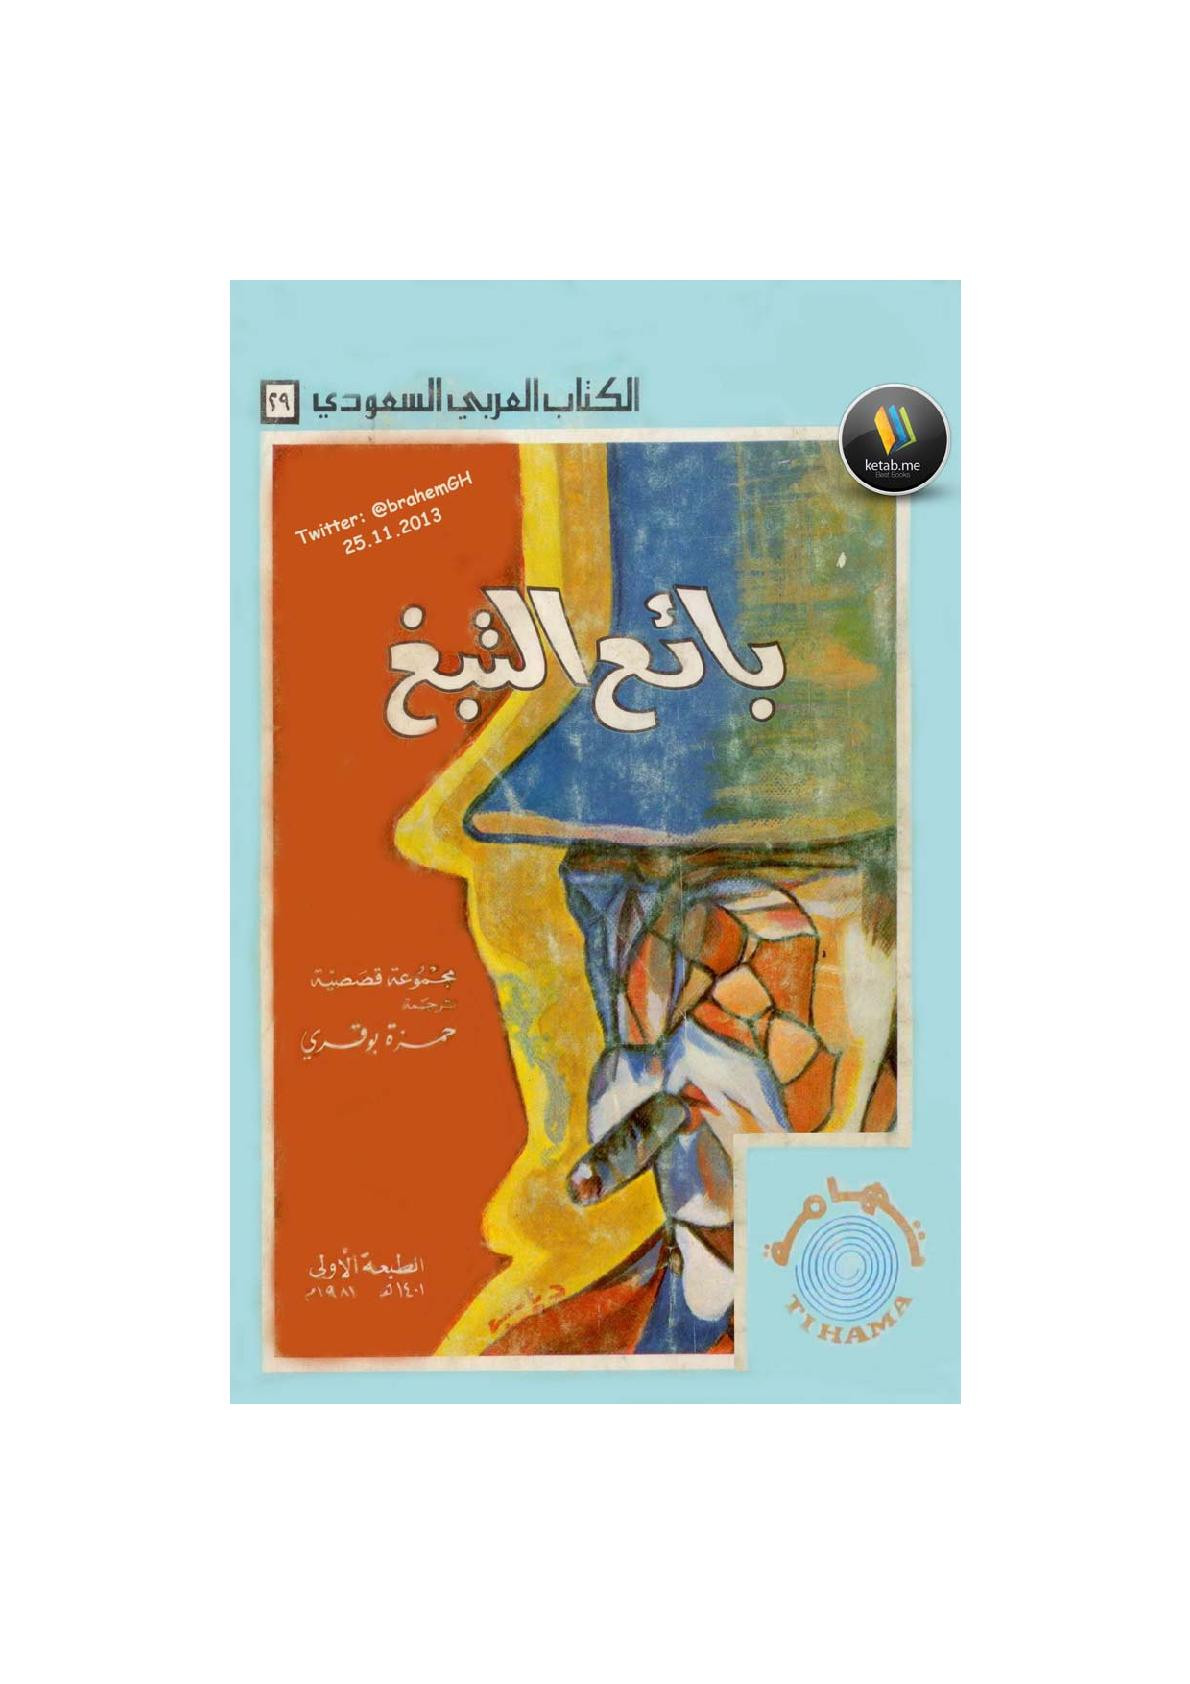 بائع التبغ وقصص أخرى ترجمة حمزة بوقري